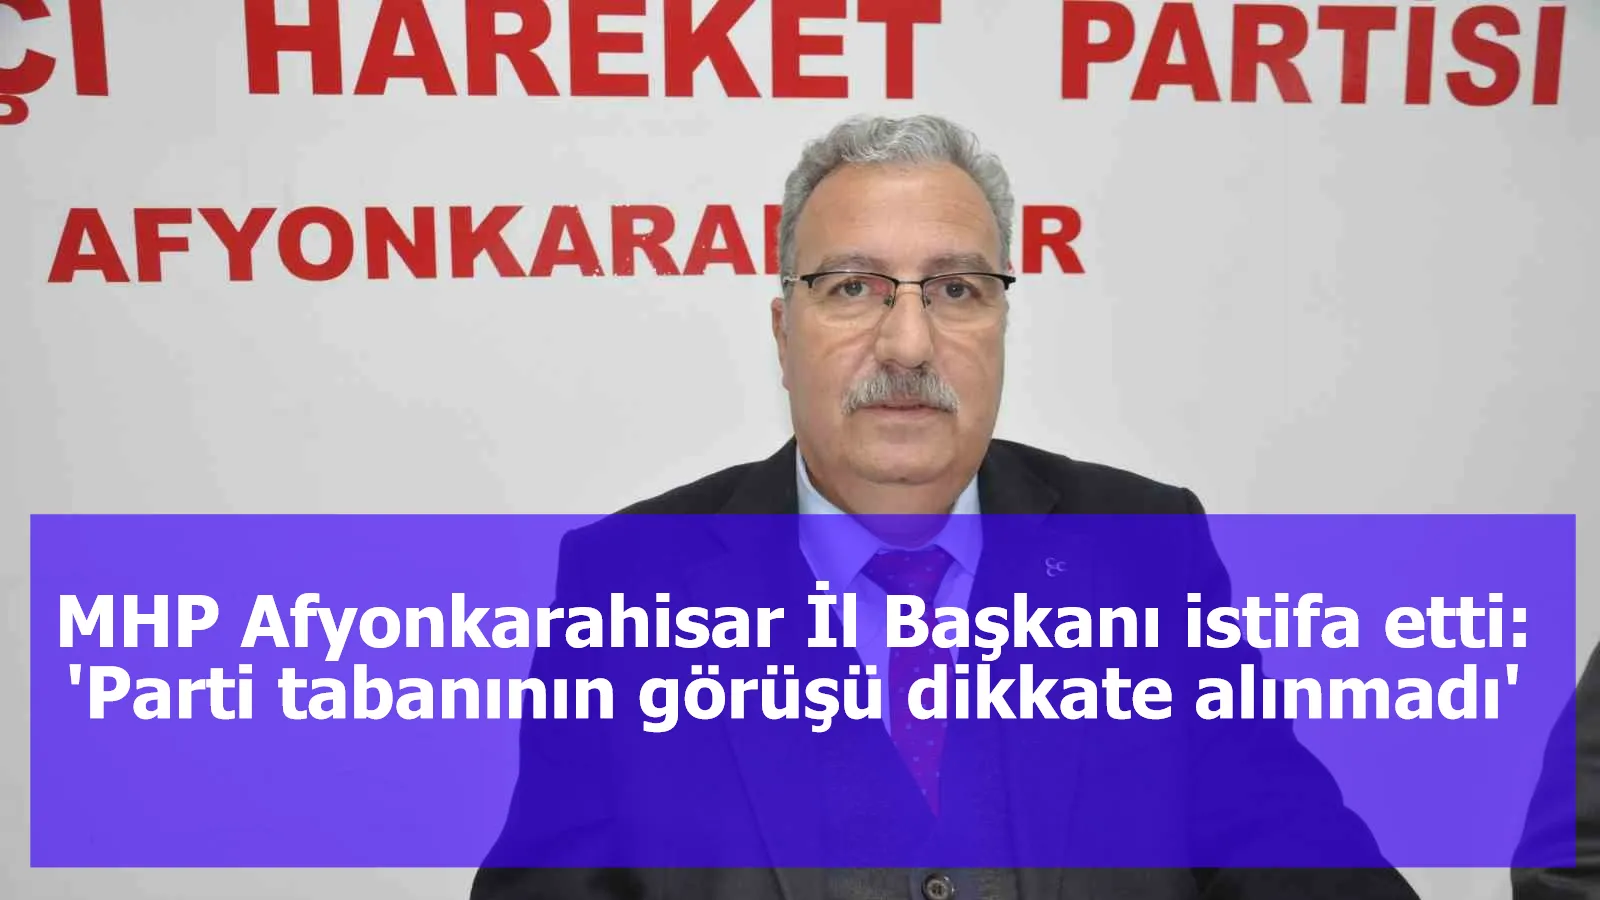 MHP Afyonkarahisar İl Başkanı istifa etti: 'Parti tabanının görüşü dikkate alınmadı'